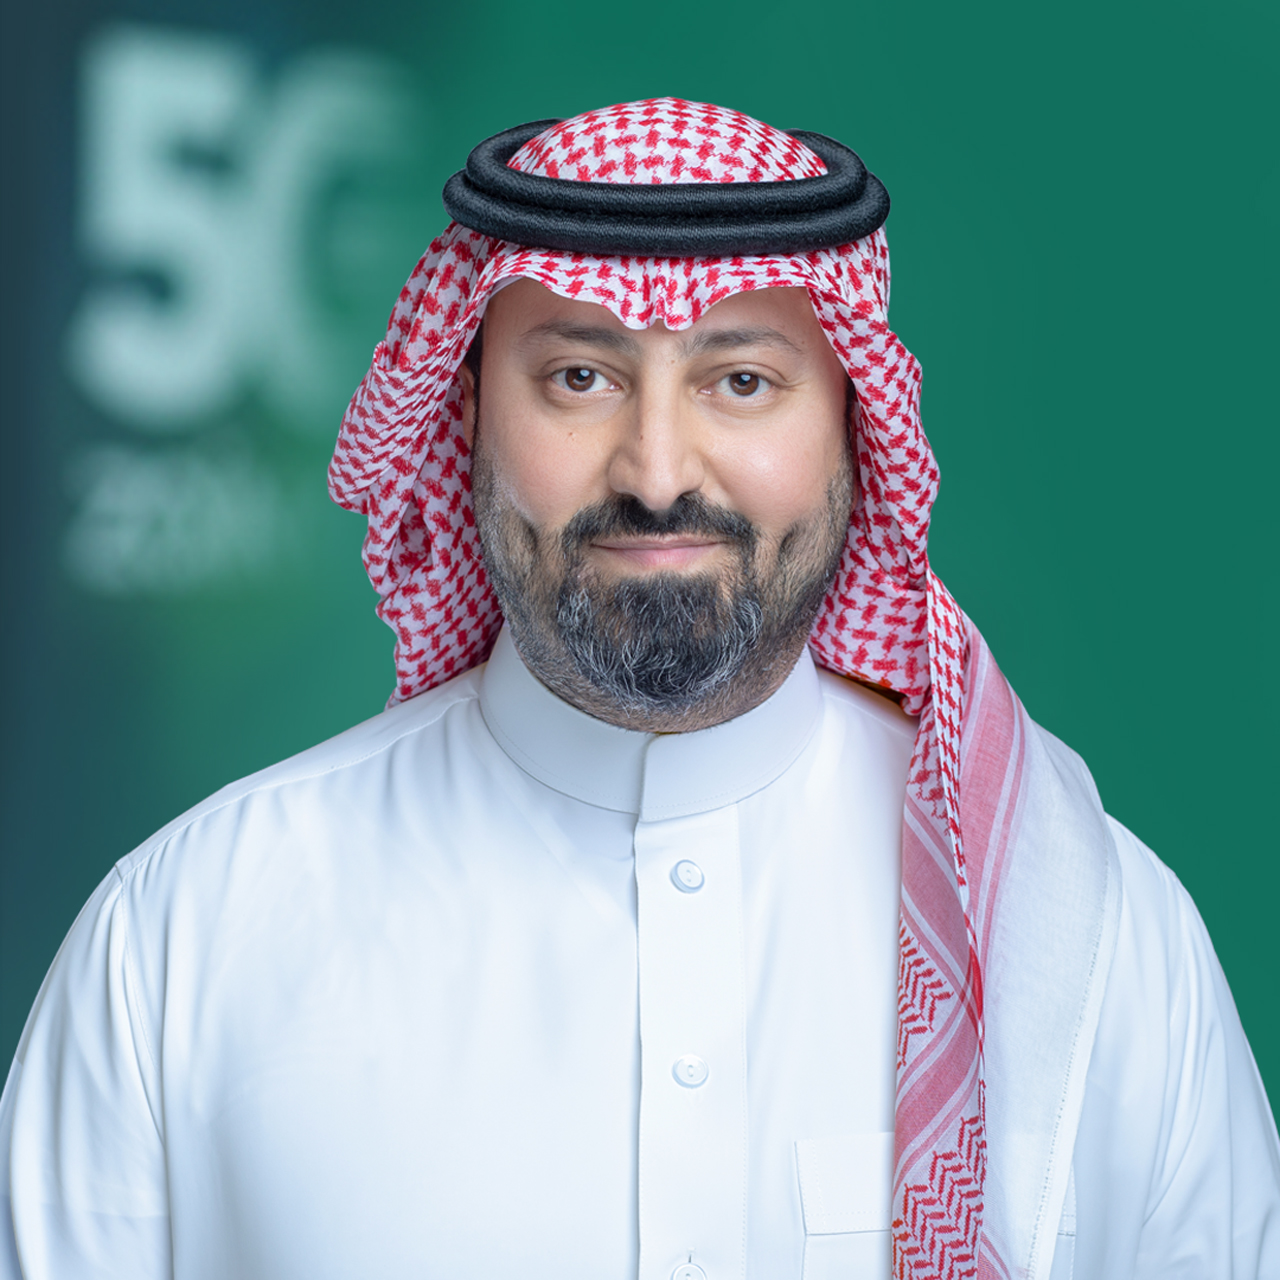 HH Prince. Naif Bin Sultan Bin Mohammed Bin Saud Al Kabeer